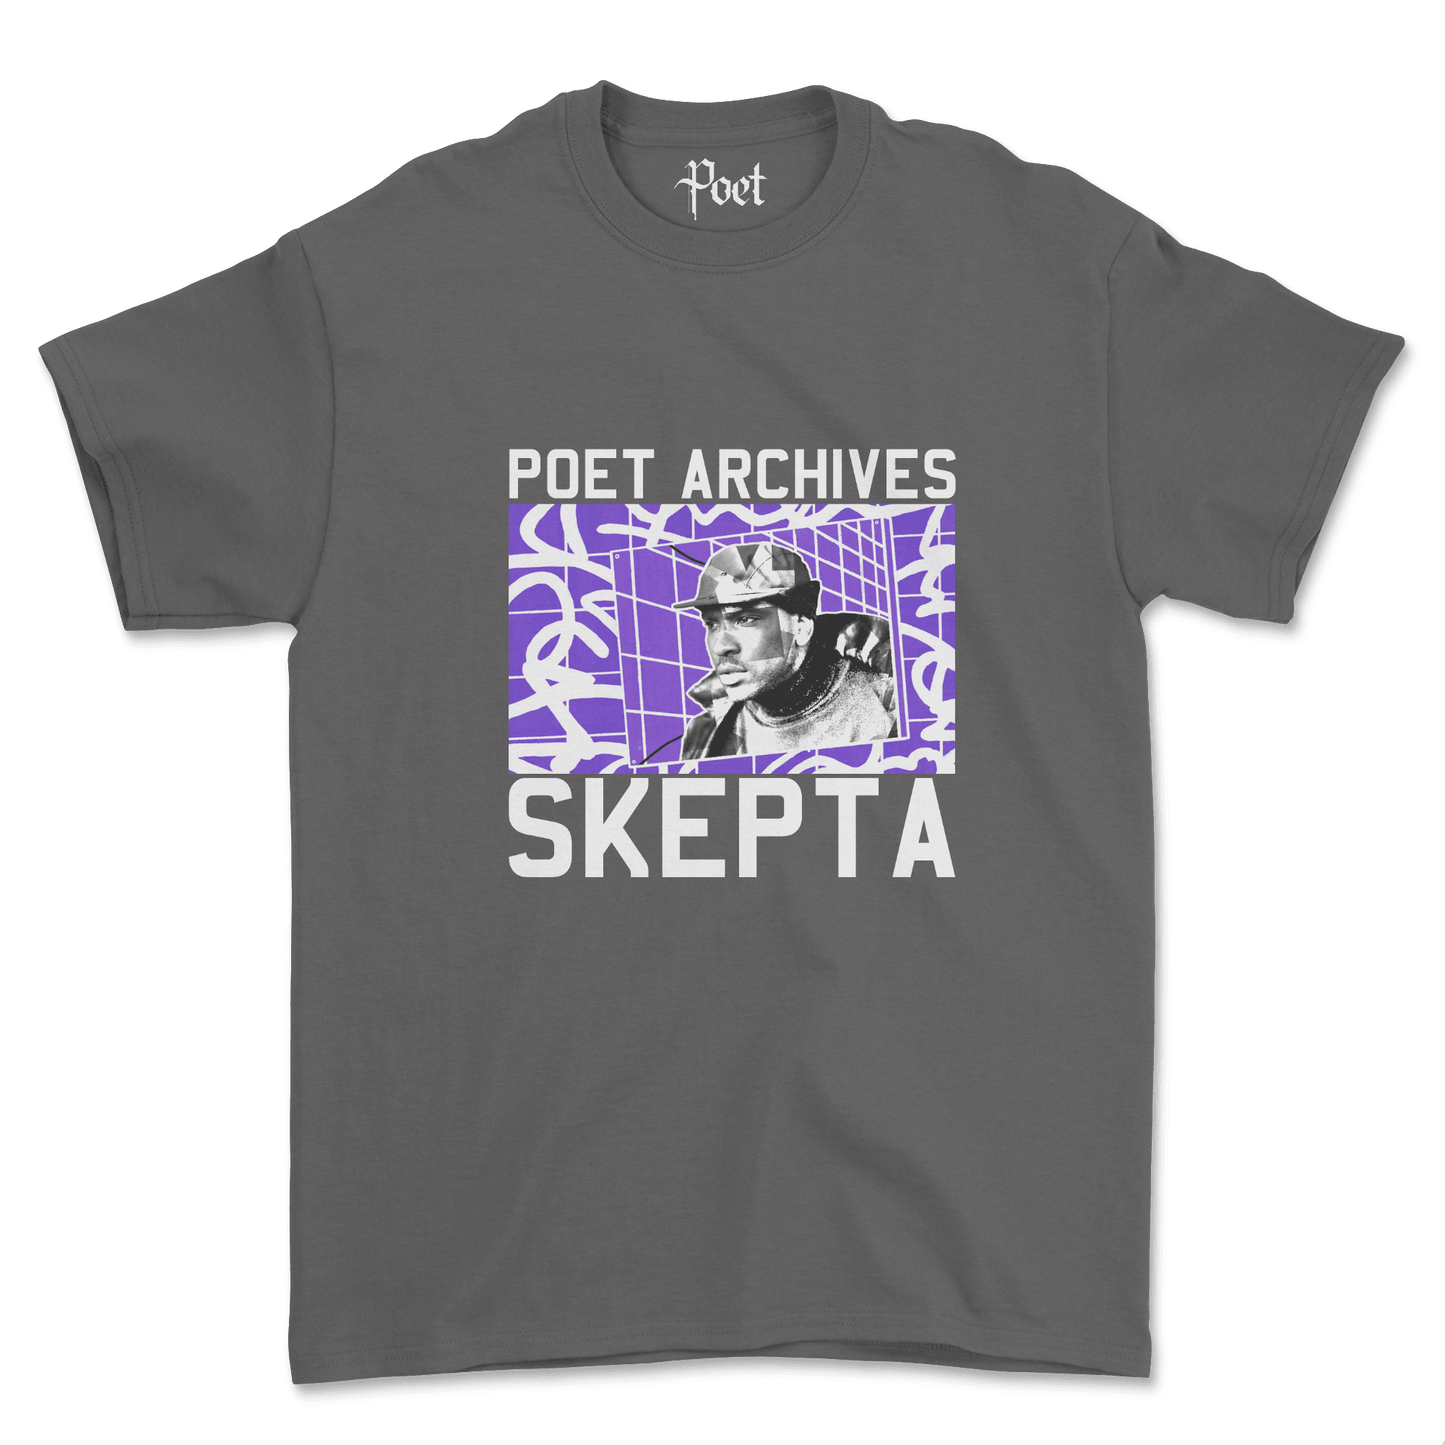 Skepta T-Shirt - Poet Archives